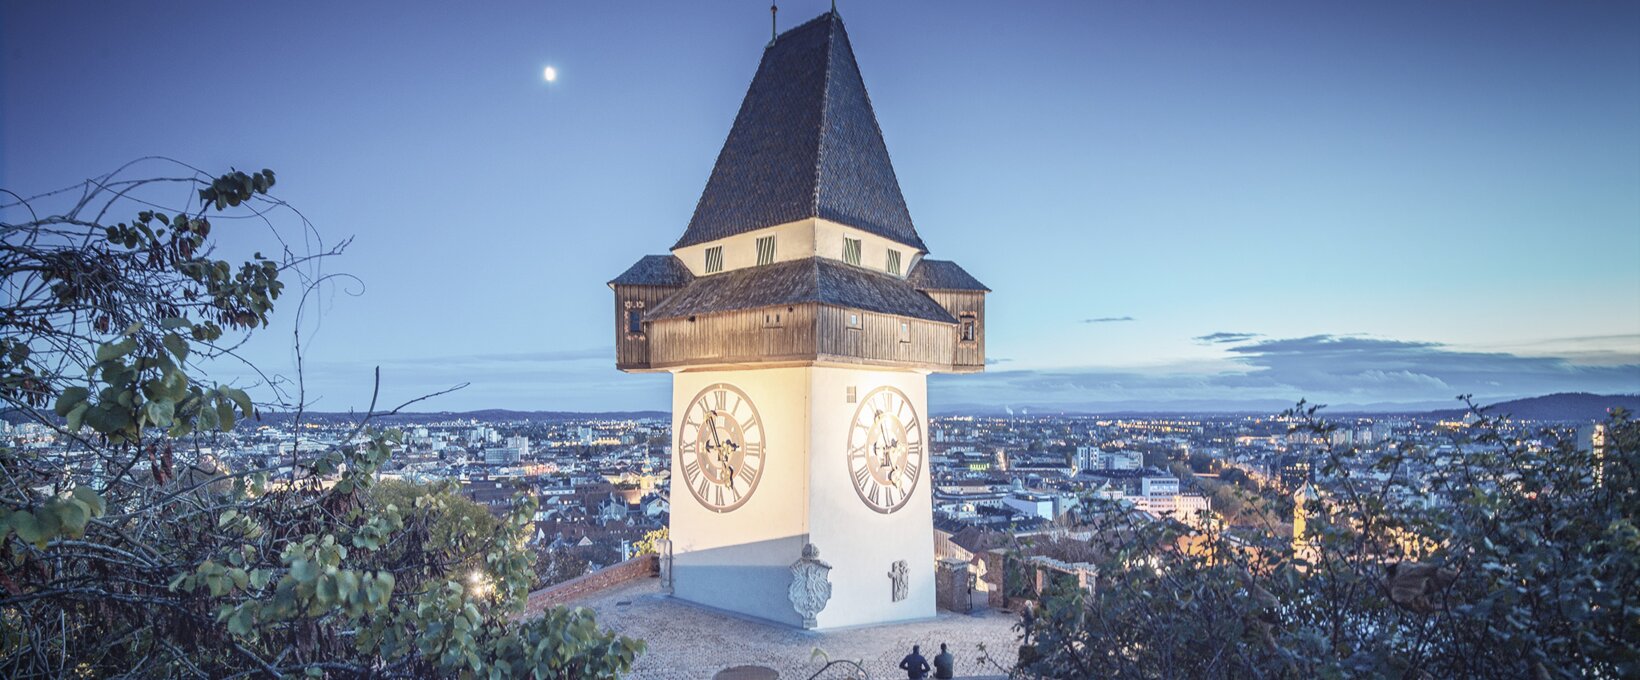 Clock Tower per night | Graz